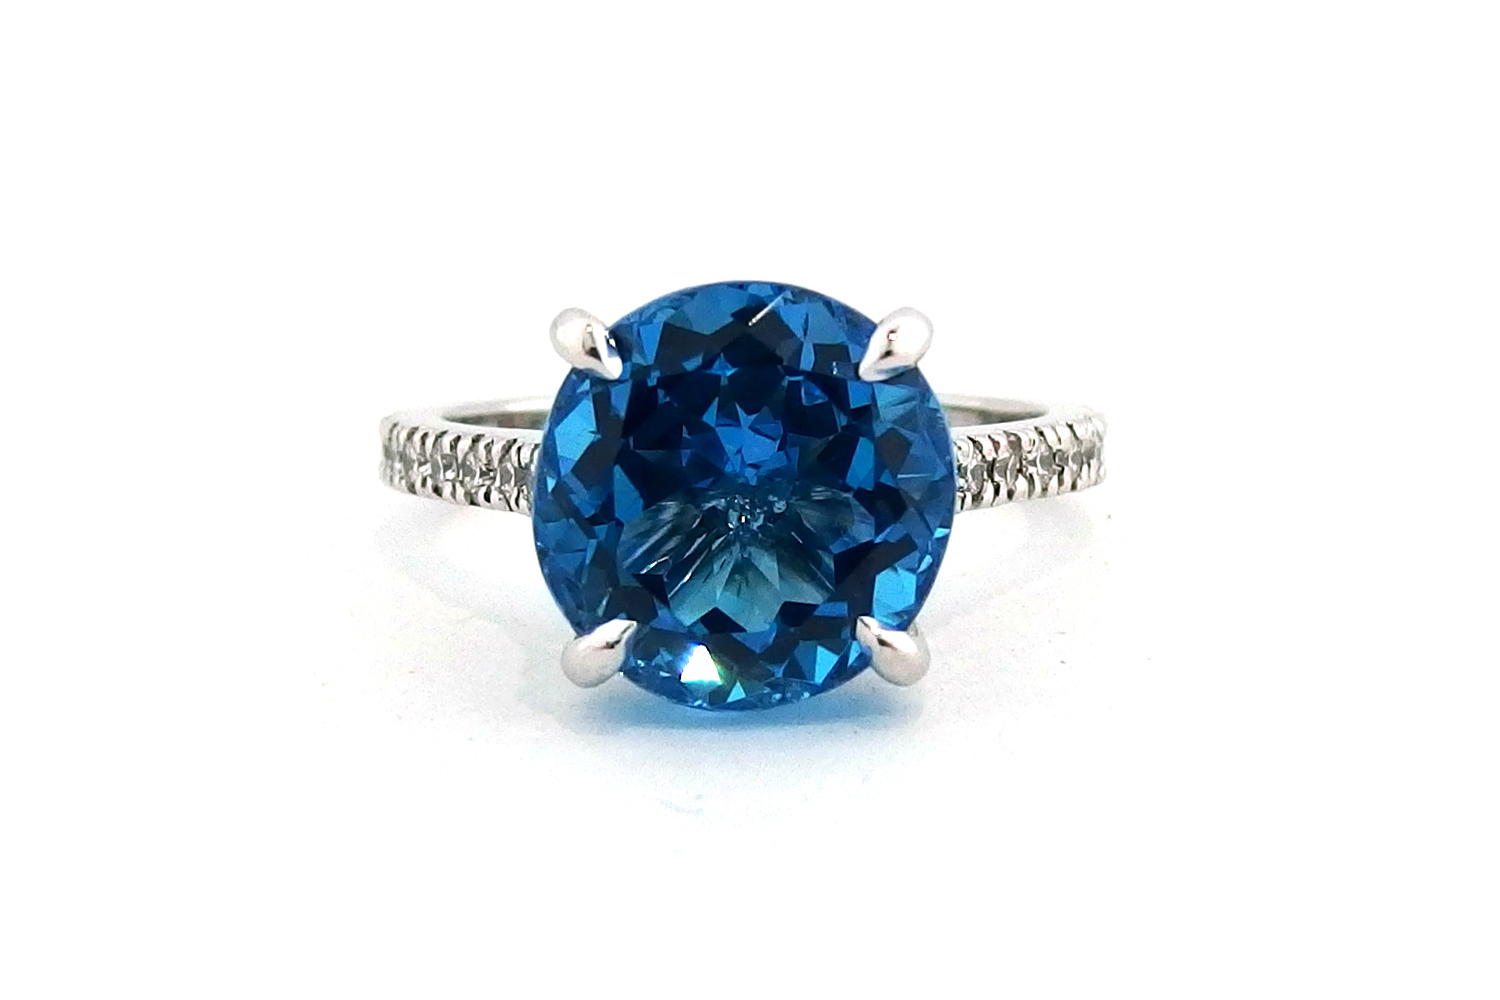 Halo Sky Blue Topaz Diamond Ring in 14K White Gold with 2.50 carat Round  Sky Blue Topaz - Diamondwish.com